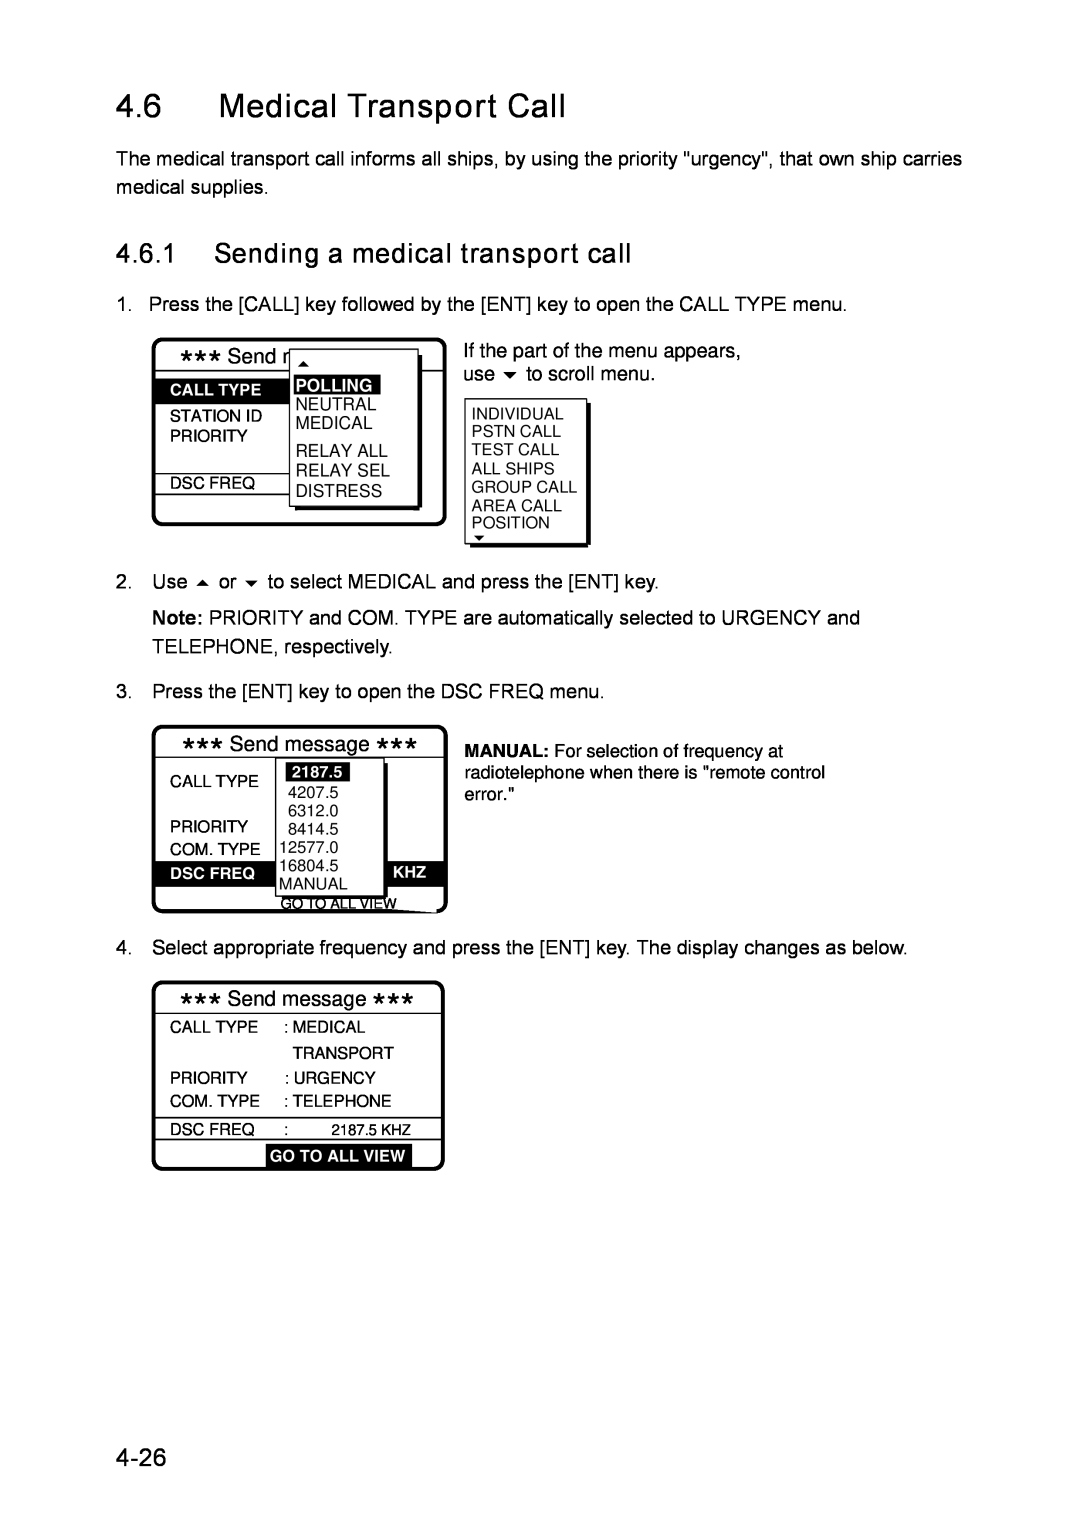 Furuno RC-1500-1T manual Medical Transport Call, Sending a medical transport call, 4-26 